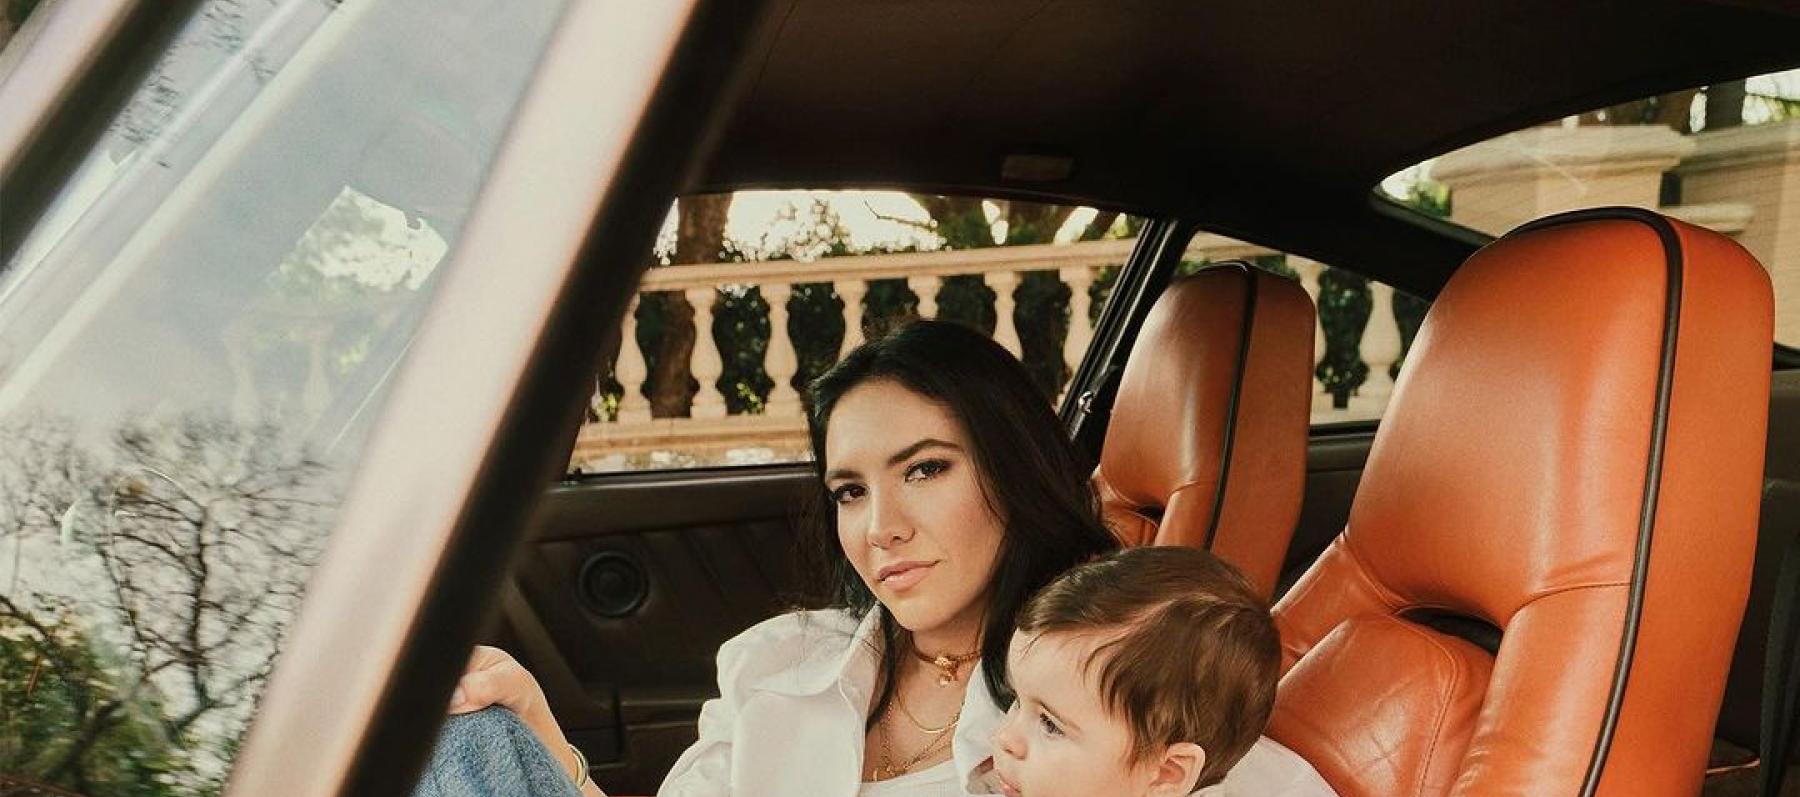 نور الفلاح وابنها رومان - صورة من Vogue Arabia